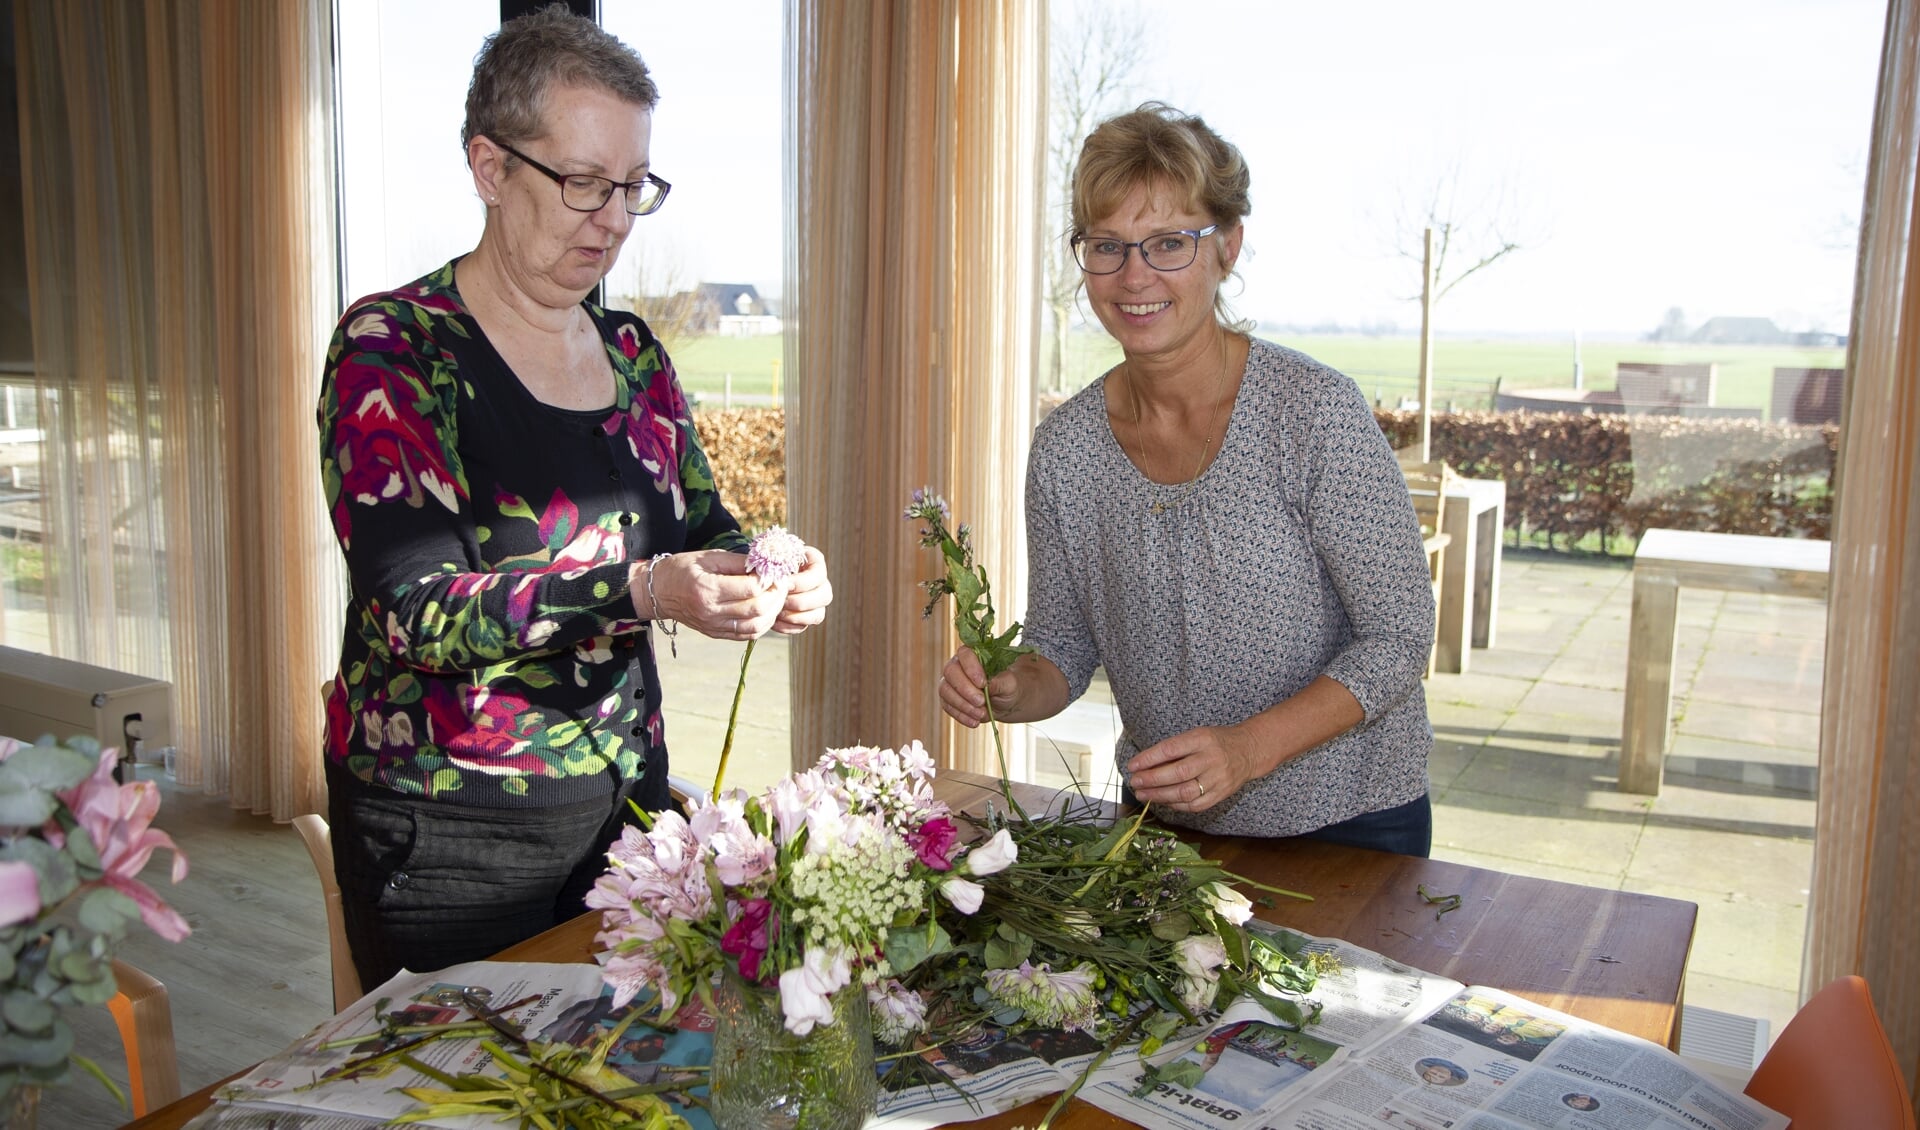 Een bewoner en medewerker van Herbergier Bartlehiem maken er een leuke middag van door samen te bloemschikken.